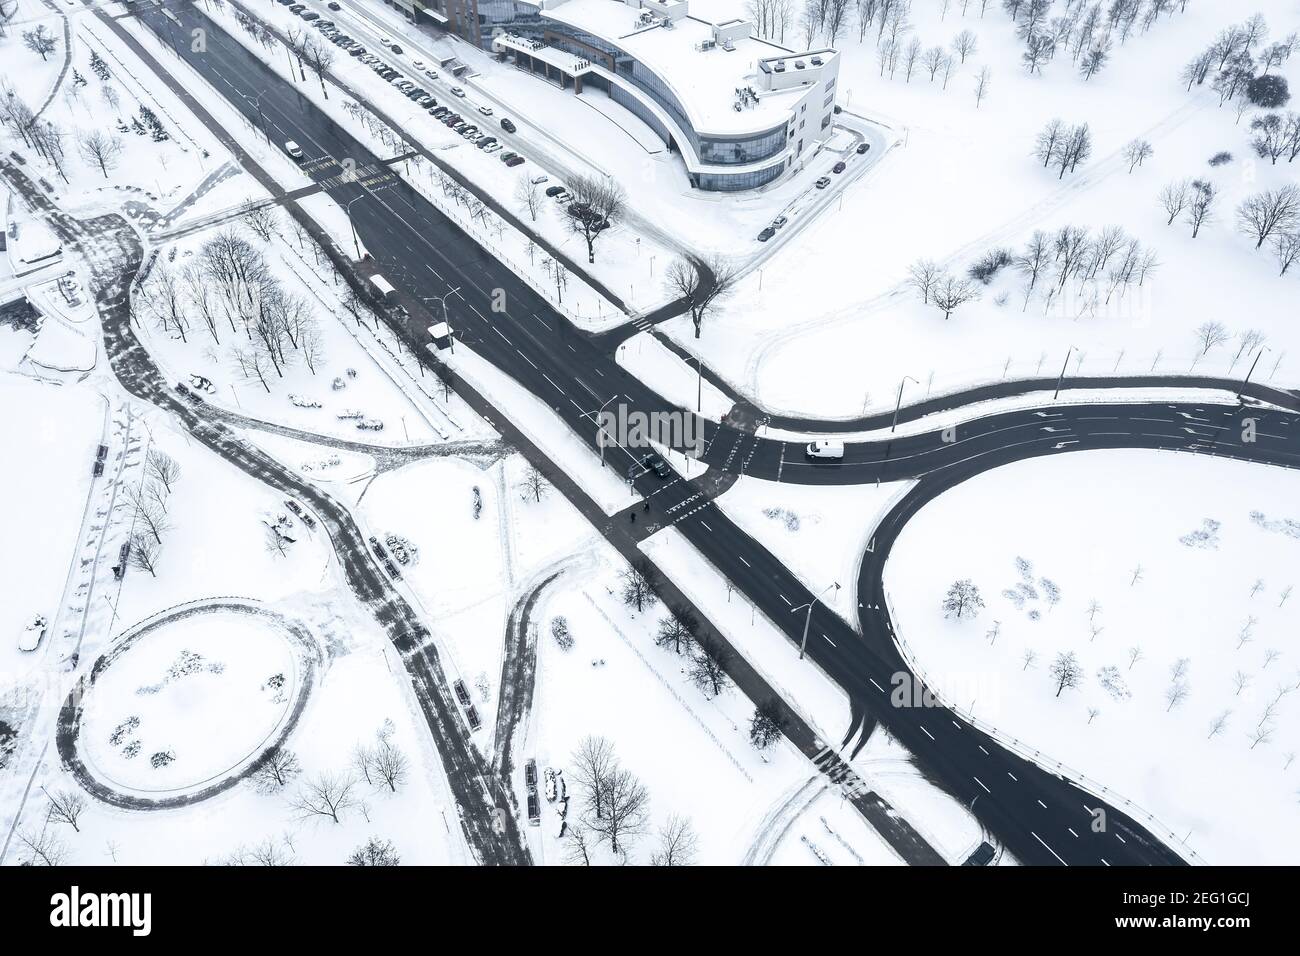 vista aerea del paesaggio urbano innevato invernale con incroci stradali. fotografia di droni Foto Stock